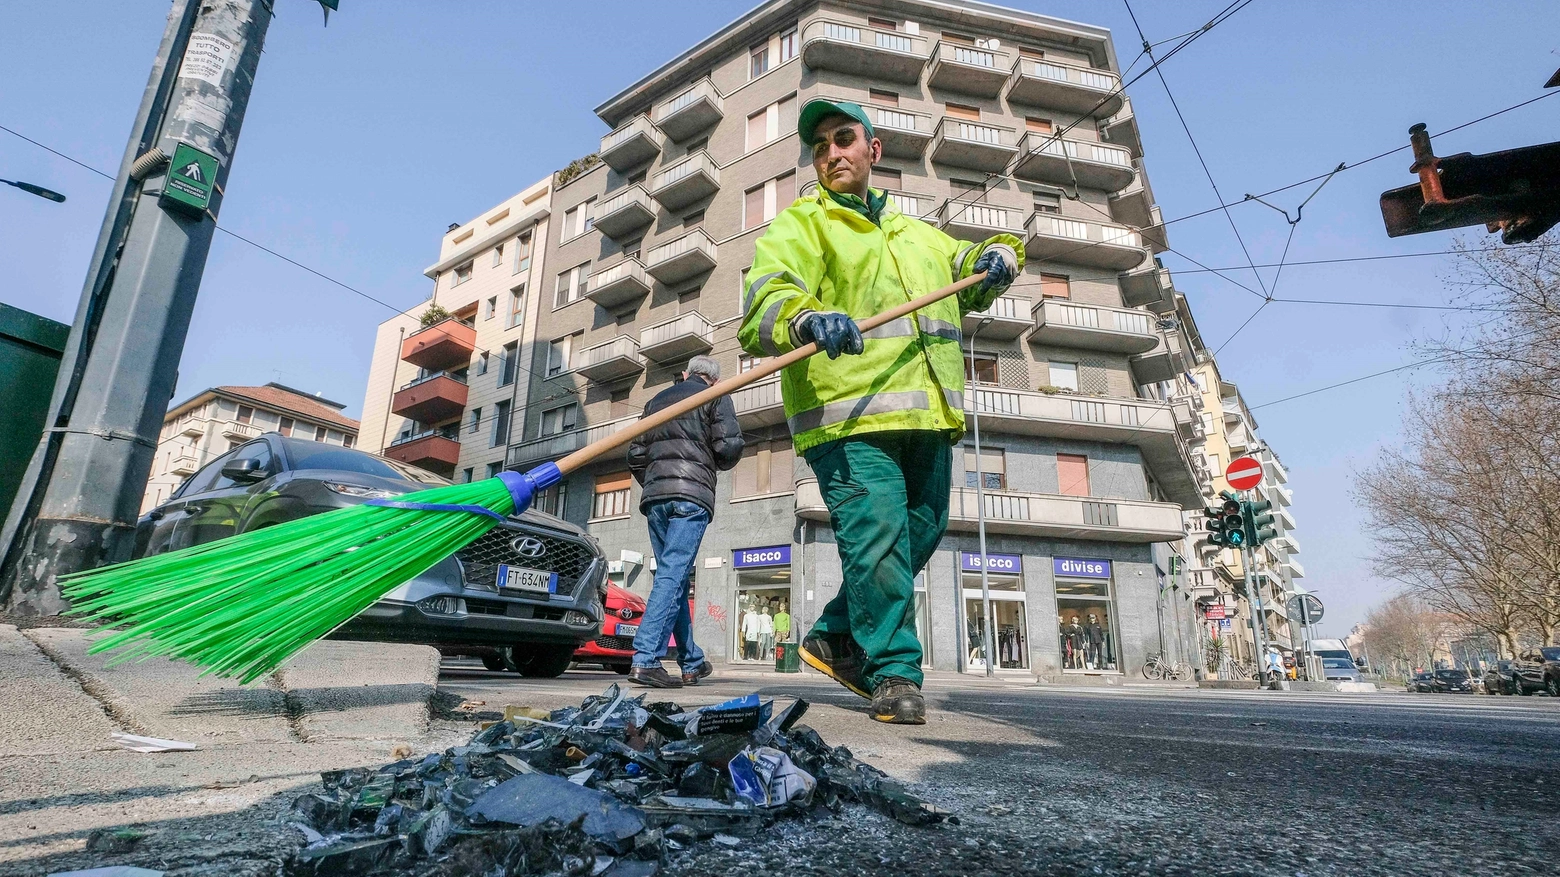 Un operatore Amsa racoglie i rifiuti abbandonati sul marciapiede (NewPress)